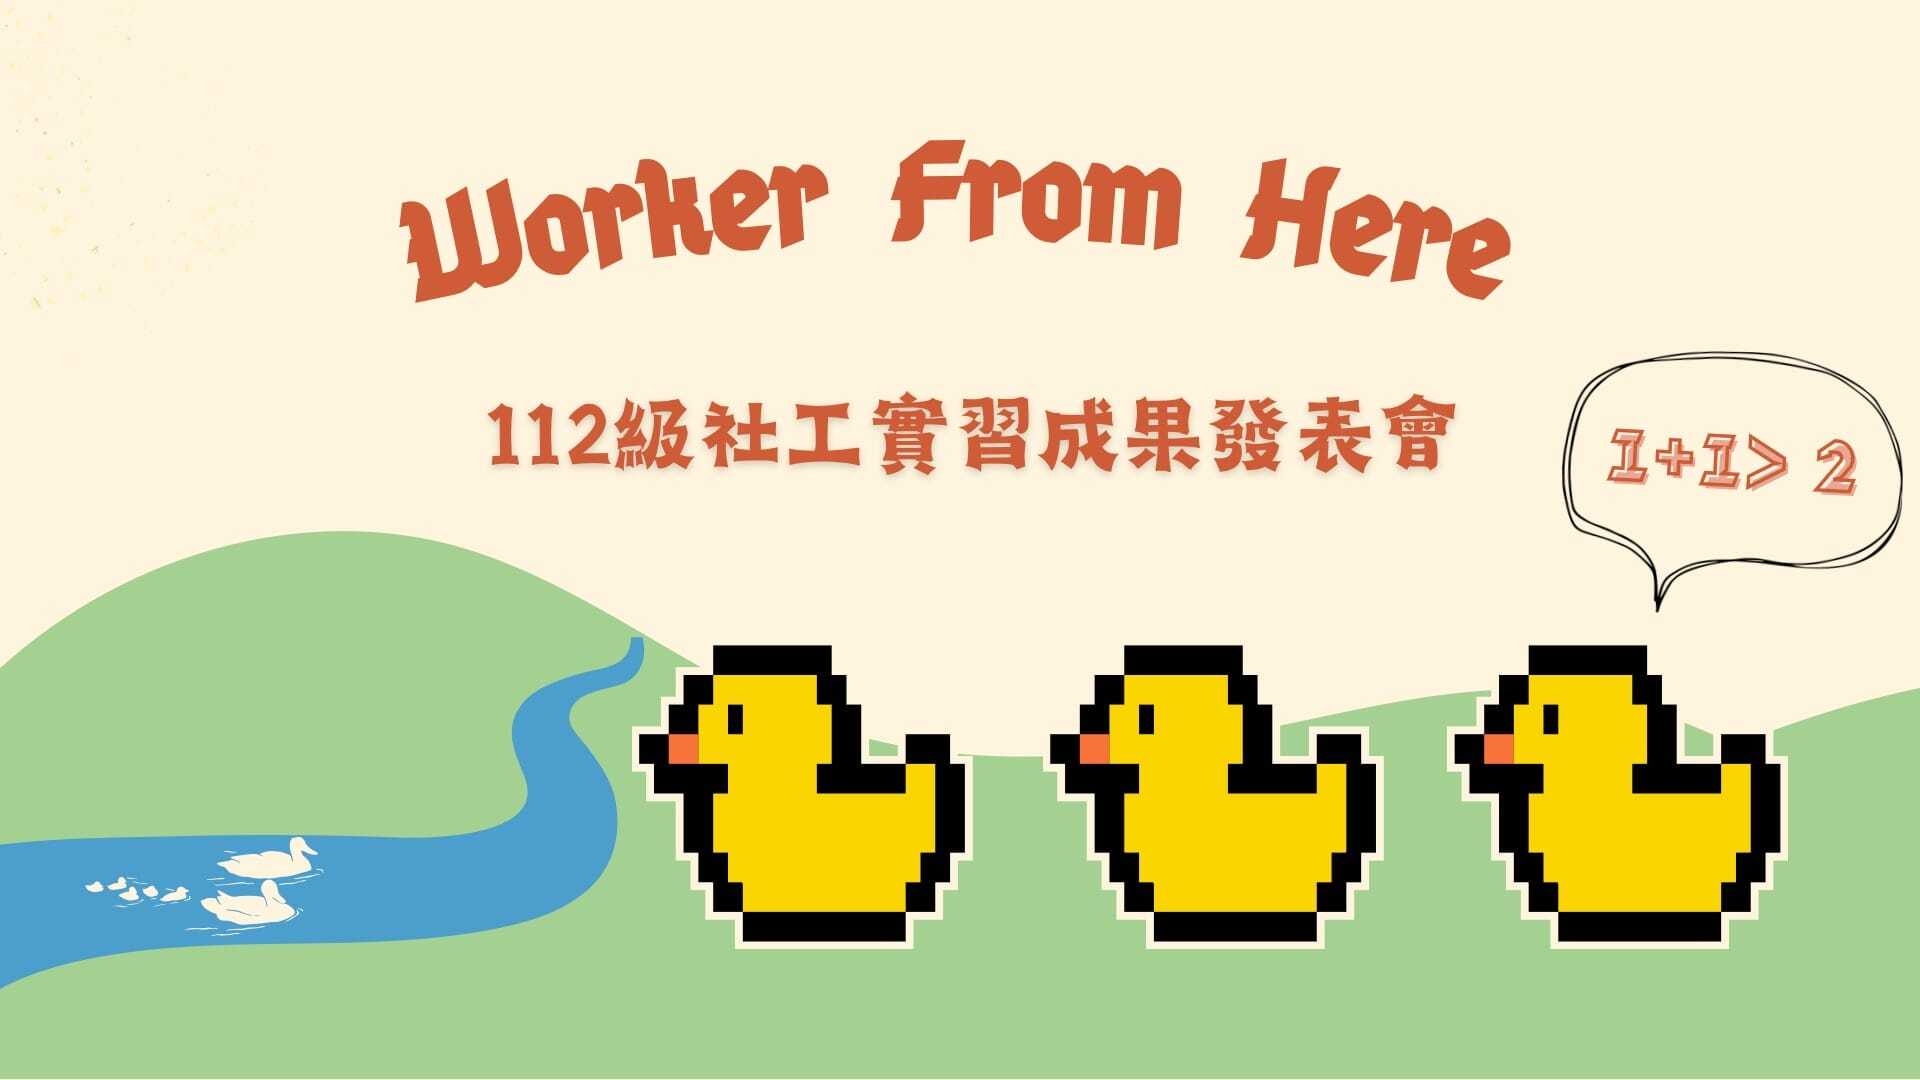 Worker from here！輔諮系112級社會工作實習課程成果發表會海報。